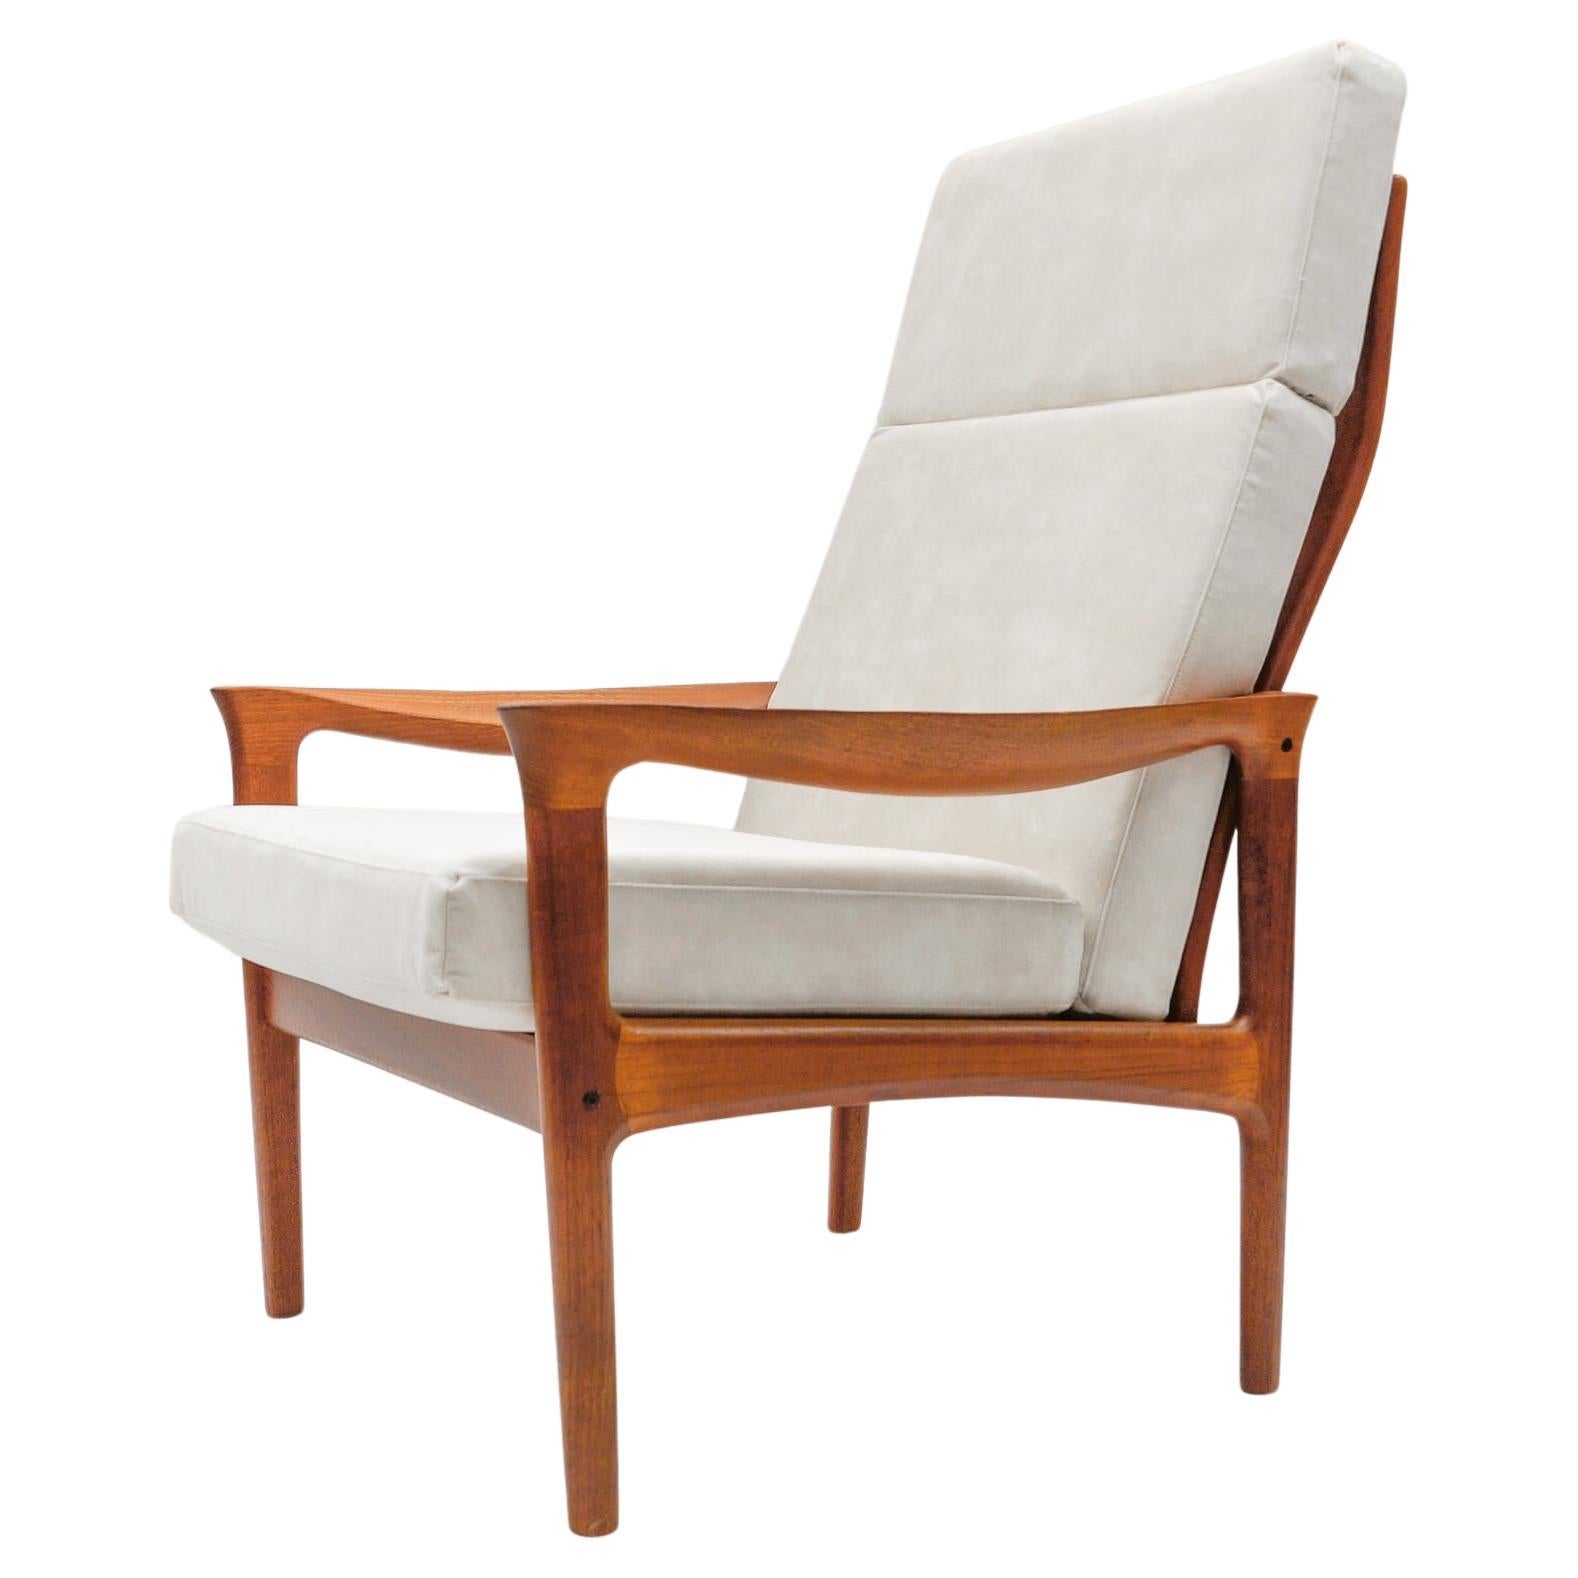 Newly Upholstered Teak High-Back Armchair, 1960s Denmark For Sale